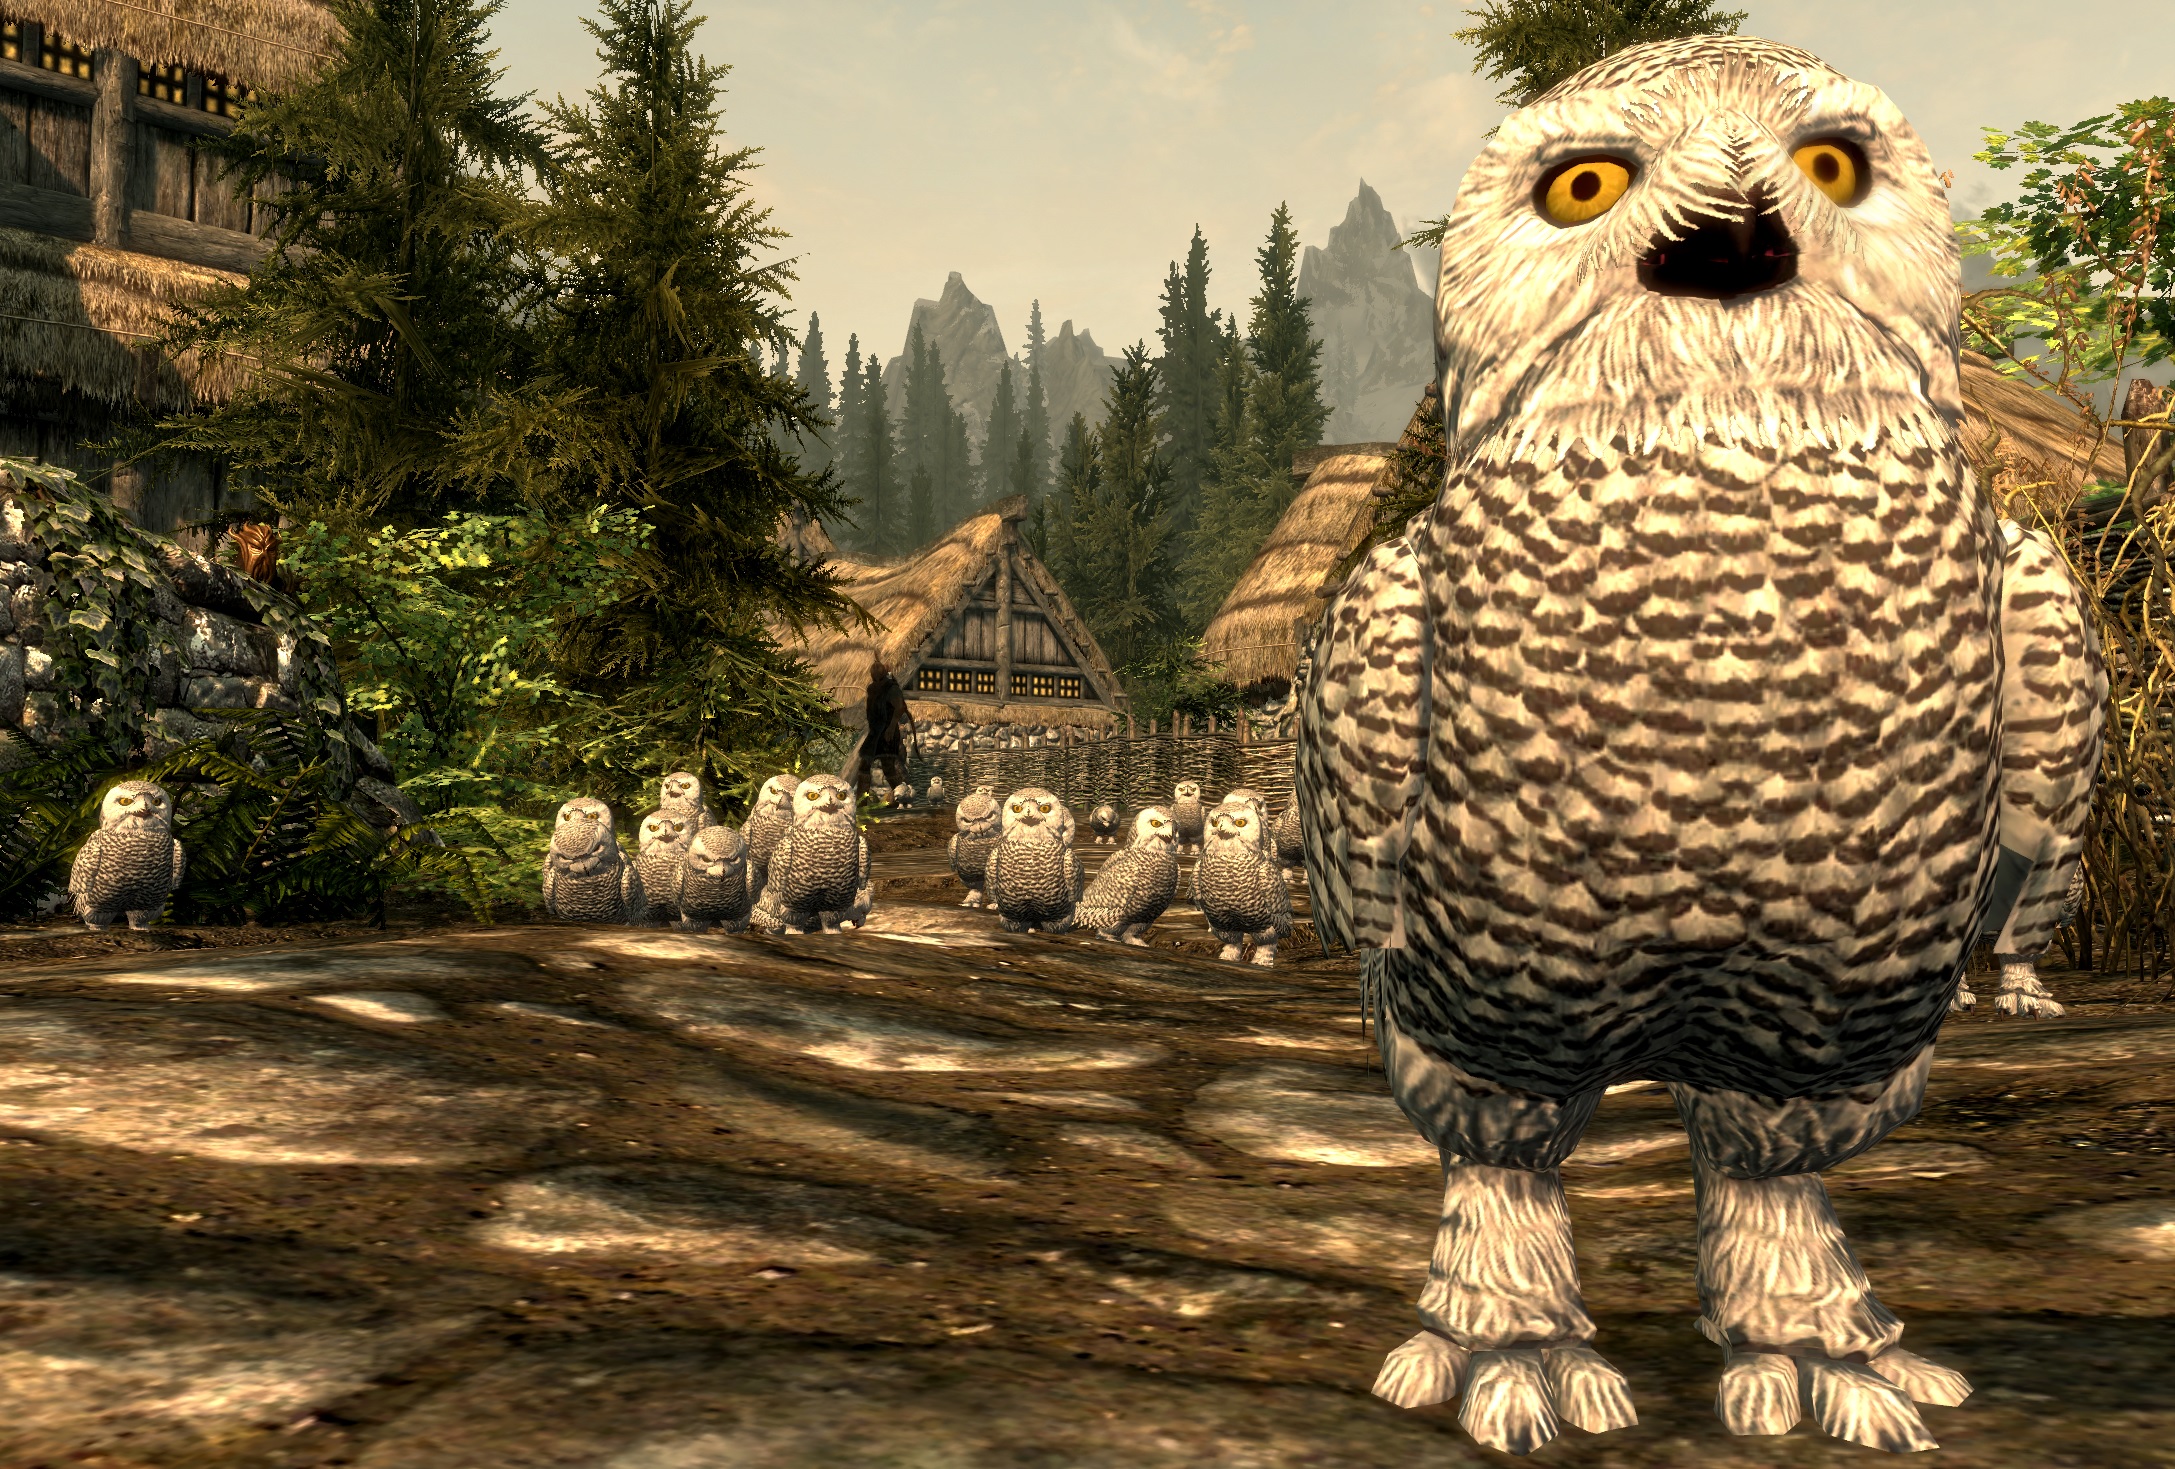 Owls 2